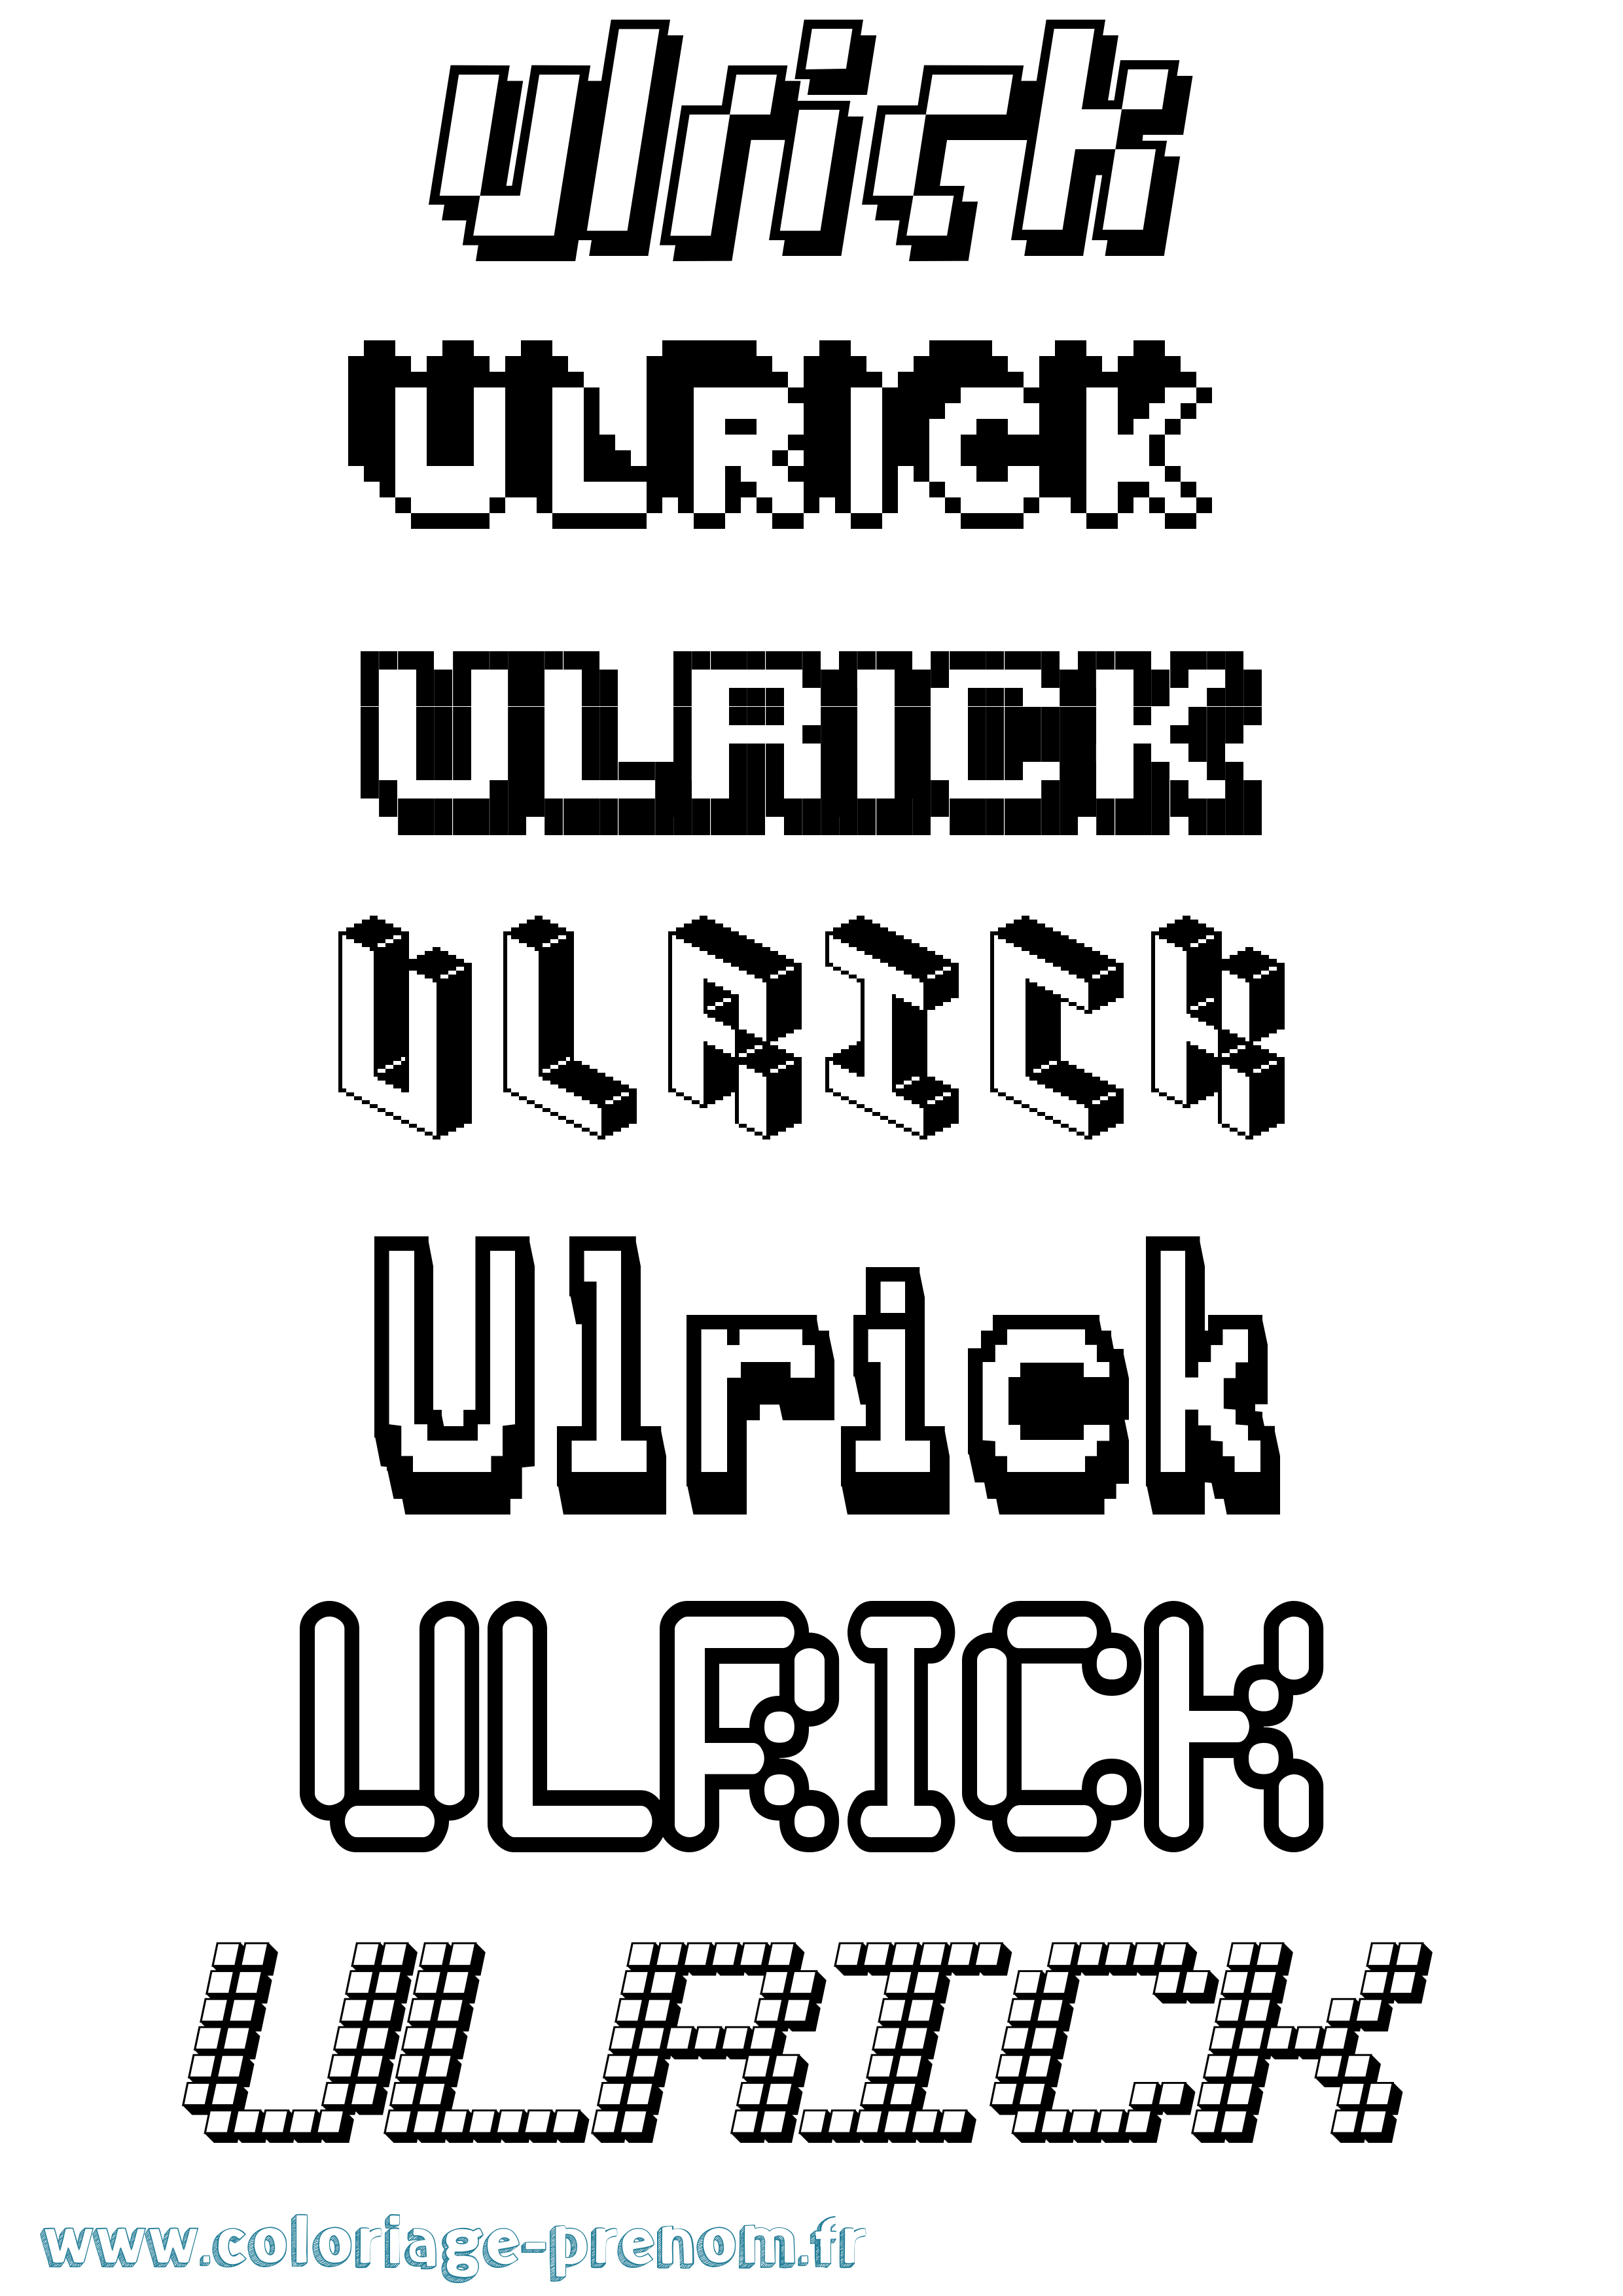 Coloriage prénom Ulrick Pixel